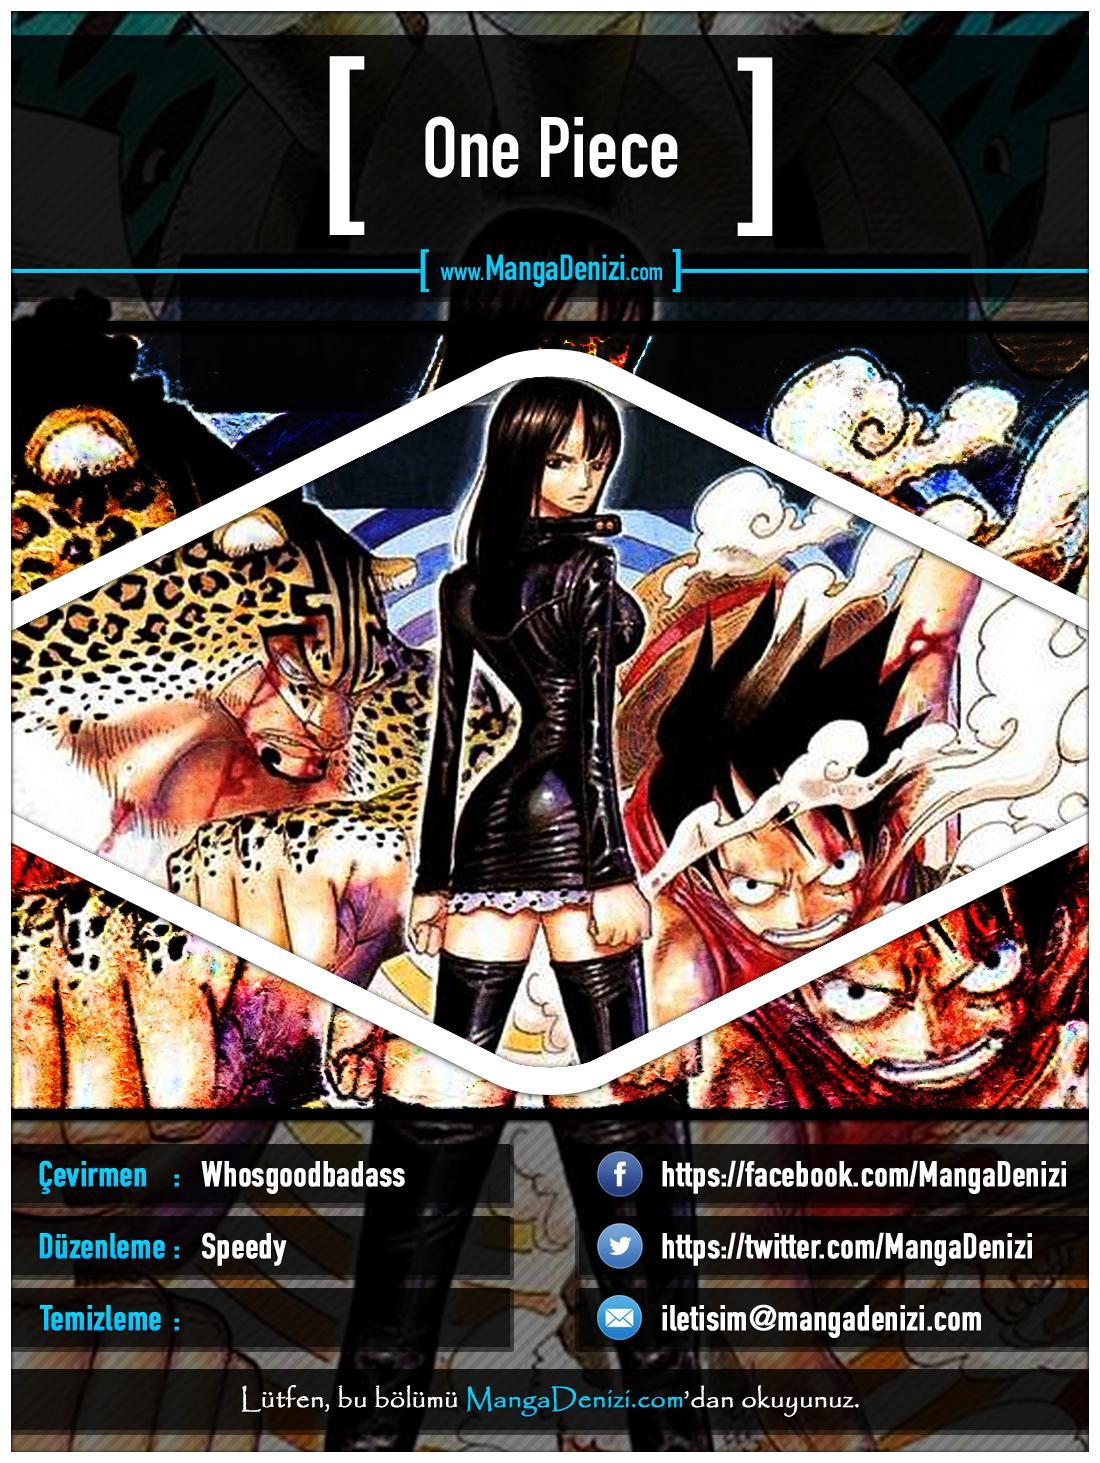 One Piece [Renkli] mangasının 0379 bölümünün 1. sayfasını okuyorsunuz.